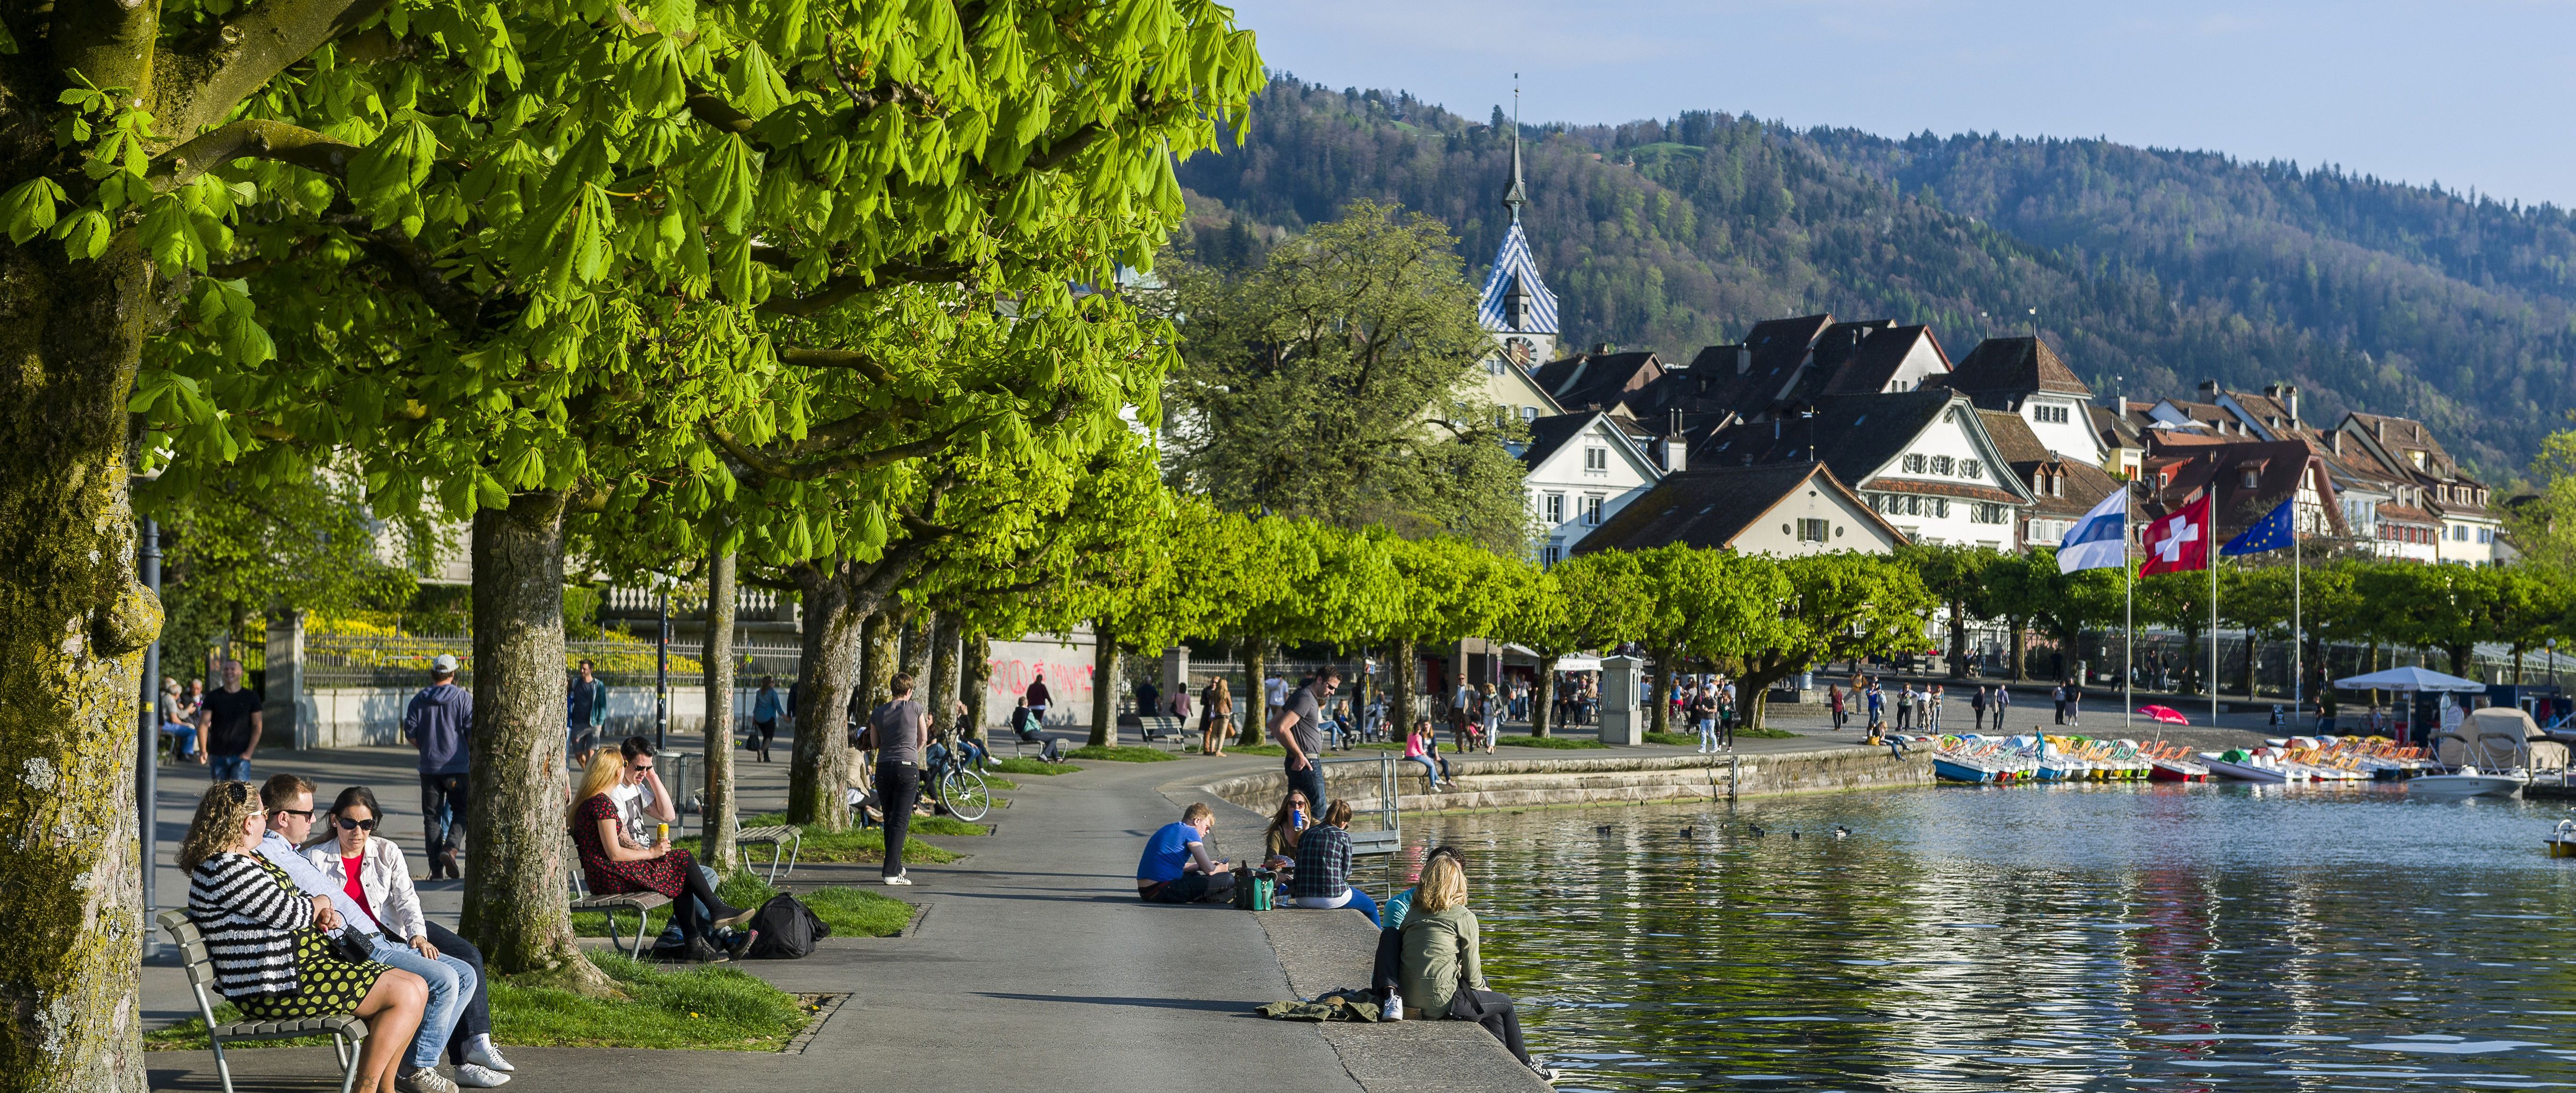 Окрестности Цюриха - что посмотреть вокруг Цюриха, города и достопримечательности рядом с Цюрихом